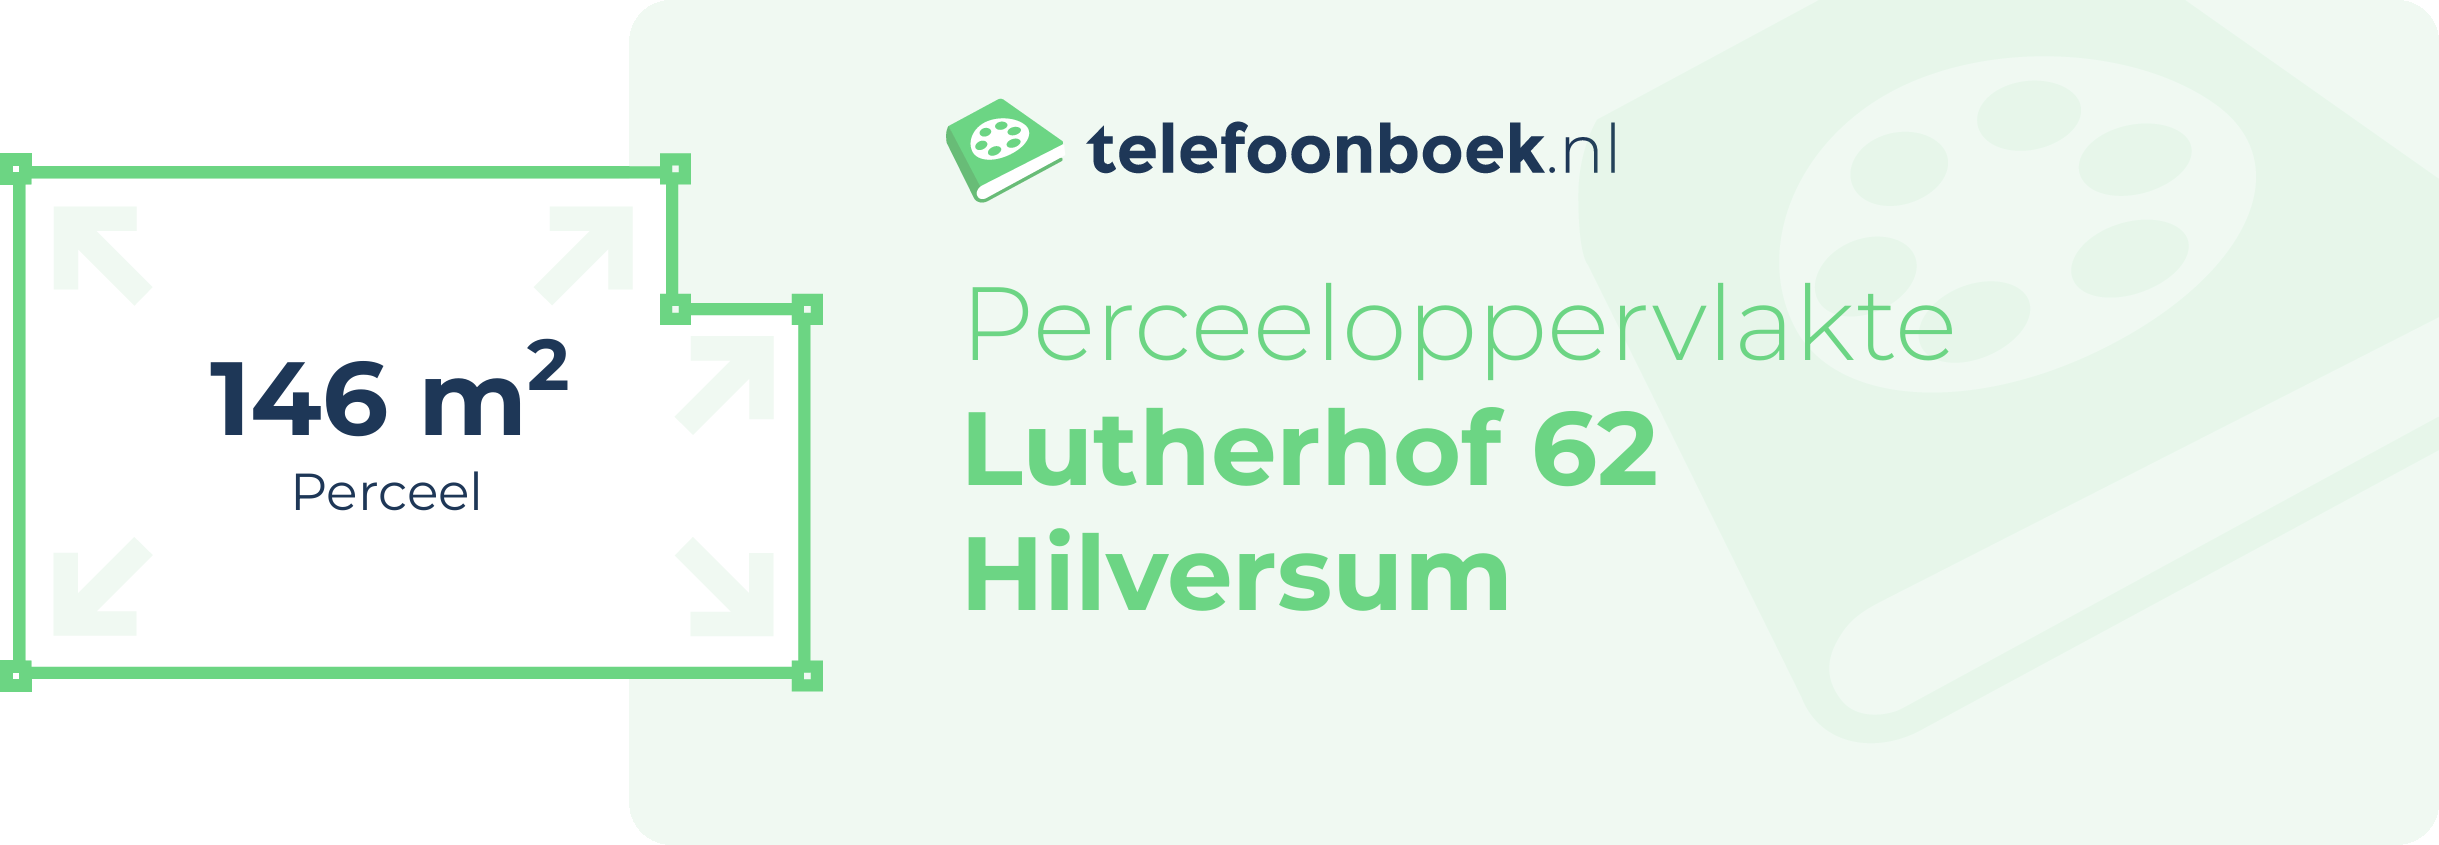 Perceeloppervlakte Lutherhof 62 Hilversum